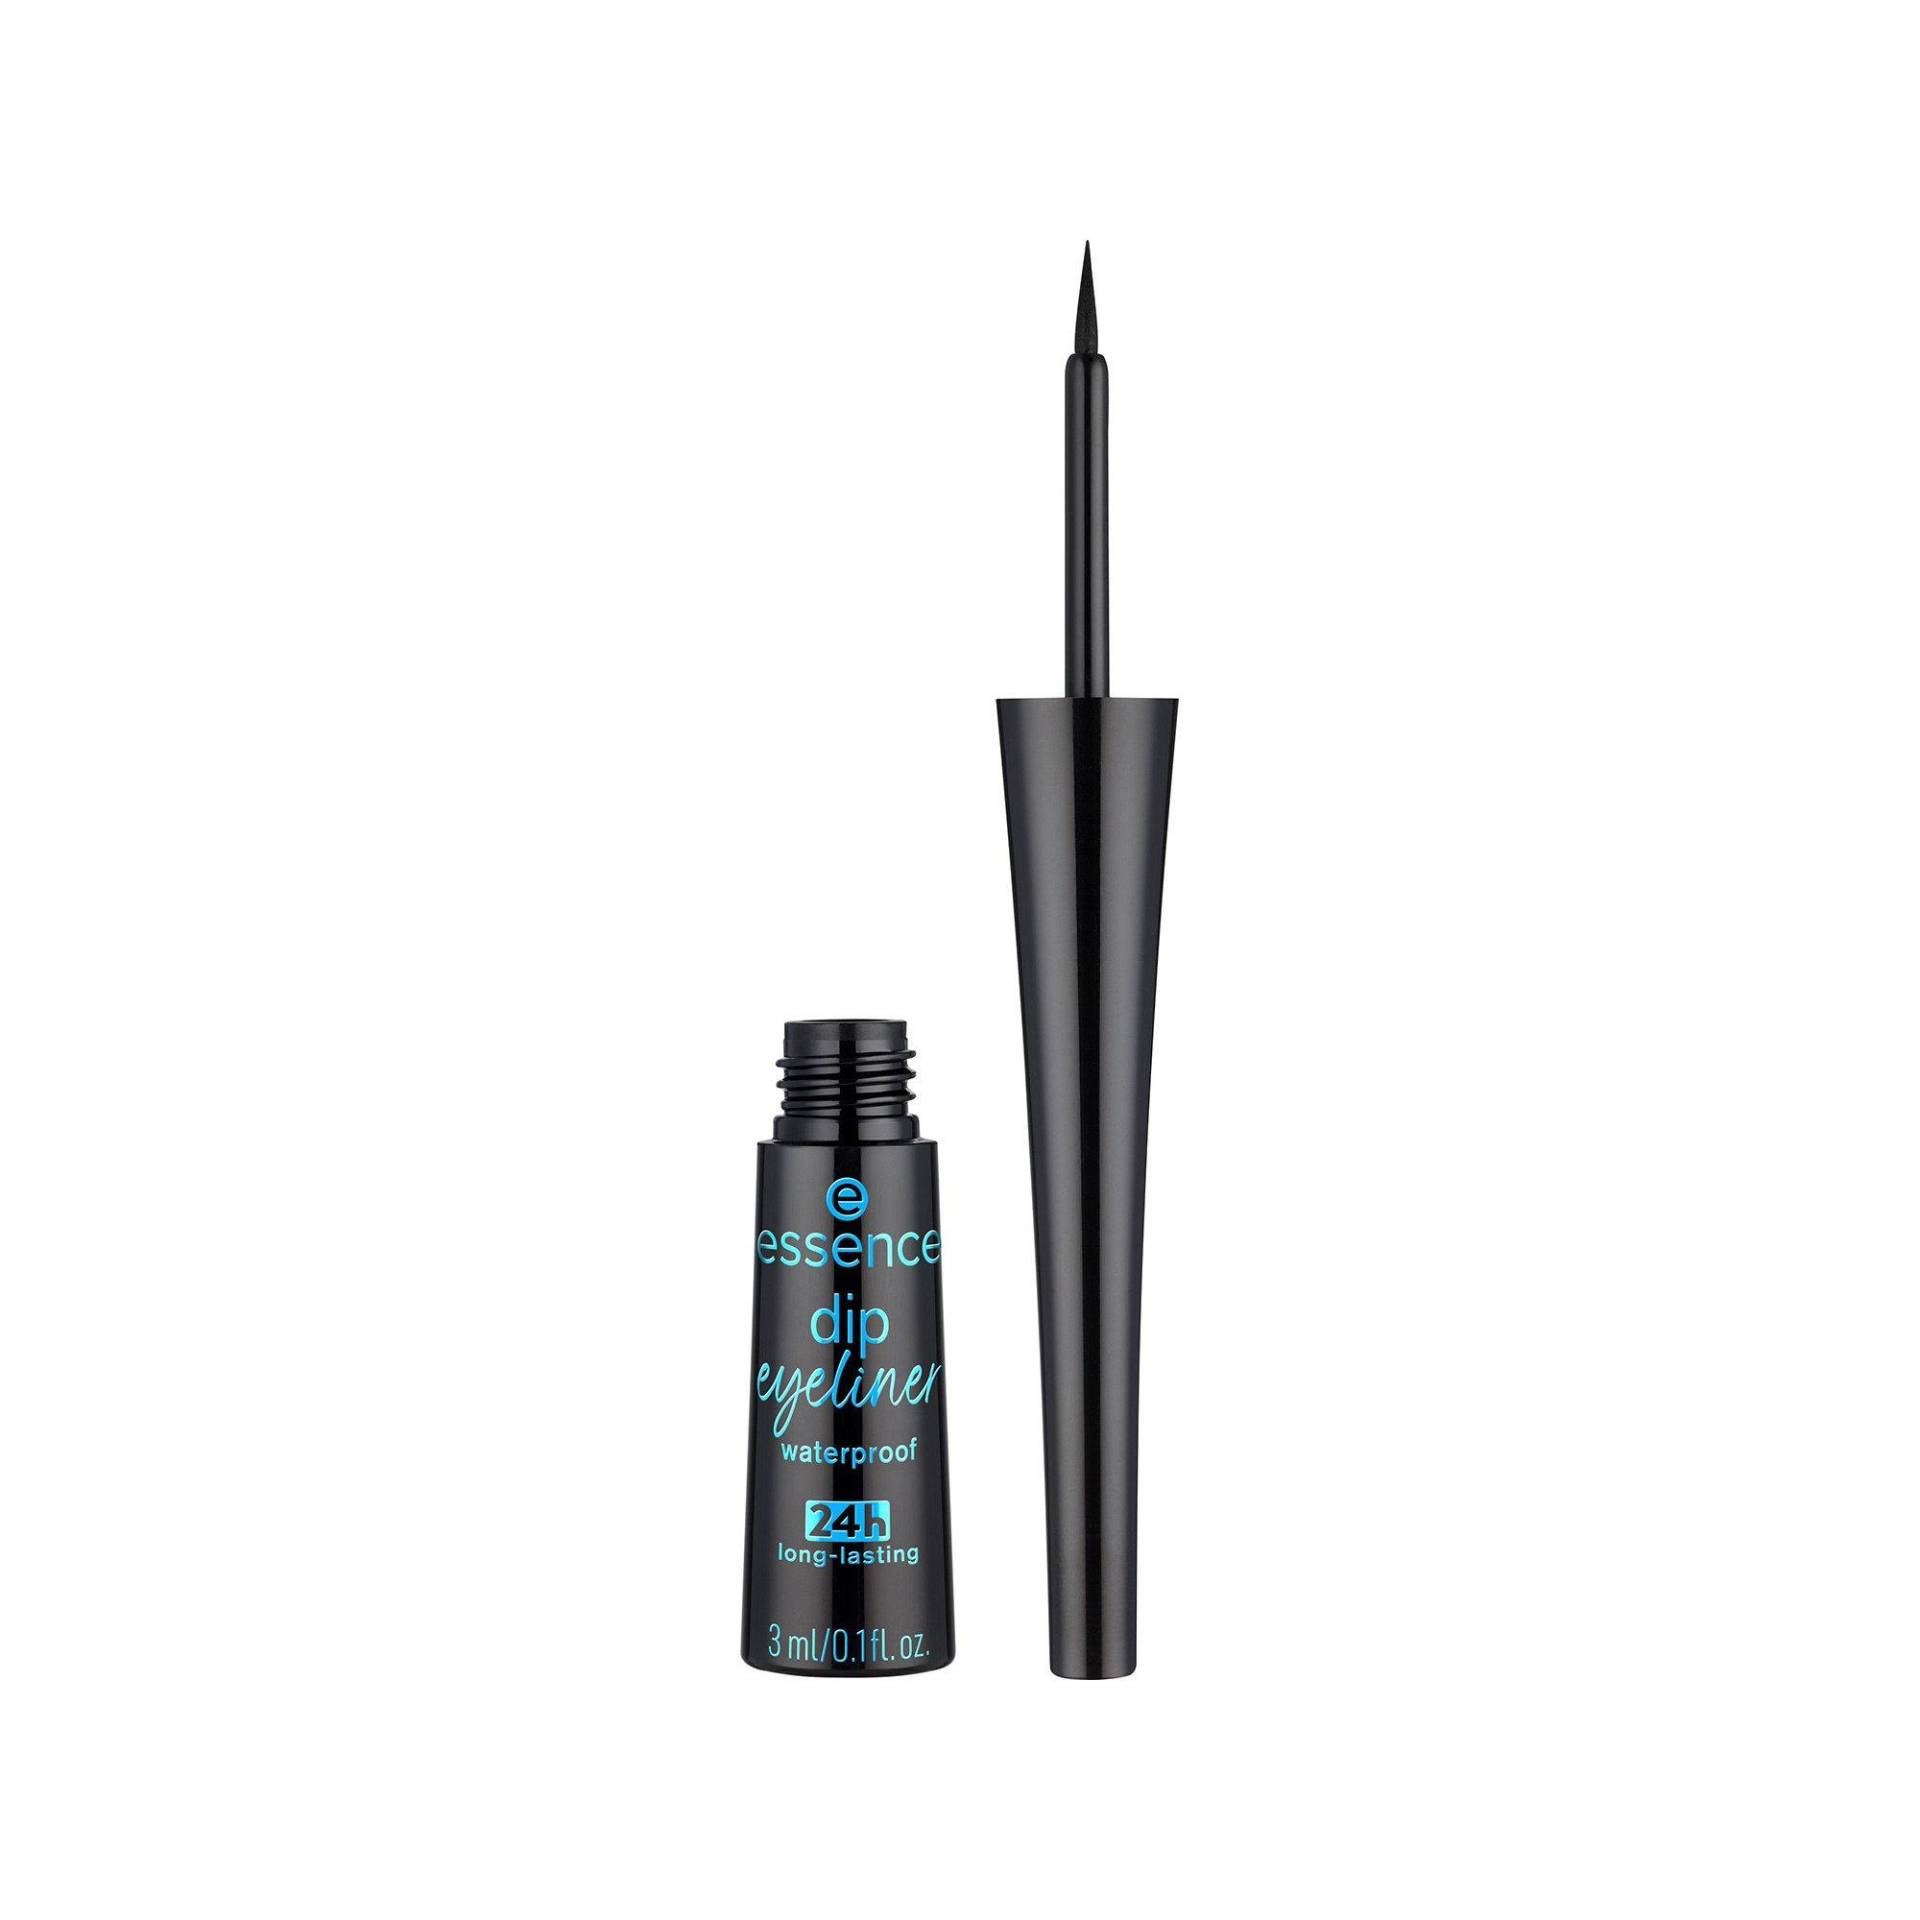 Dip Eyeliner Waterproof 24h Long-lasting Damen Black 3ml von essence